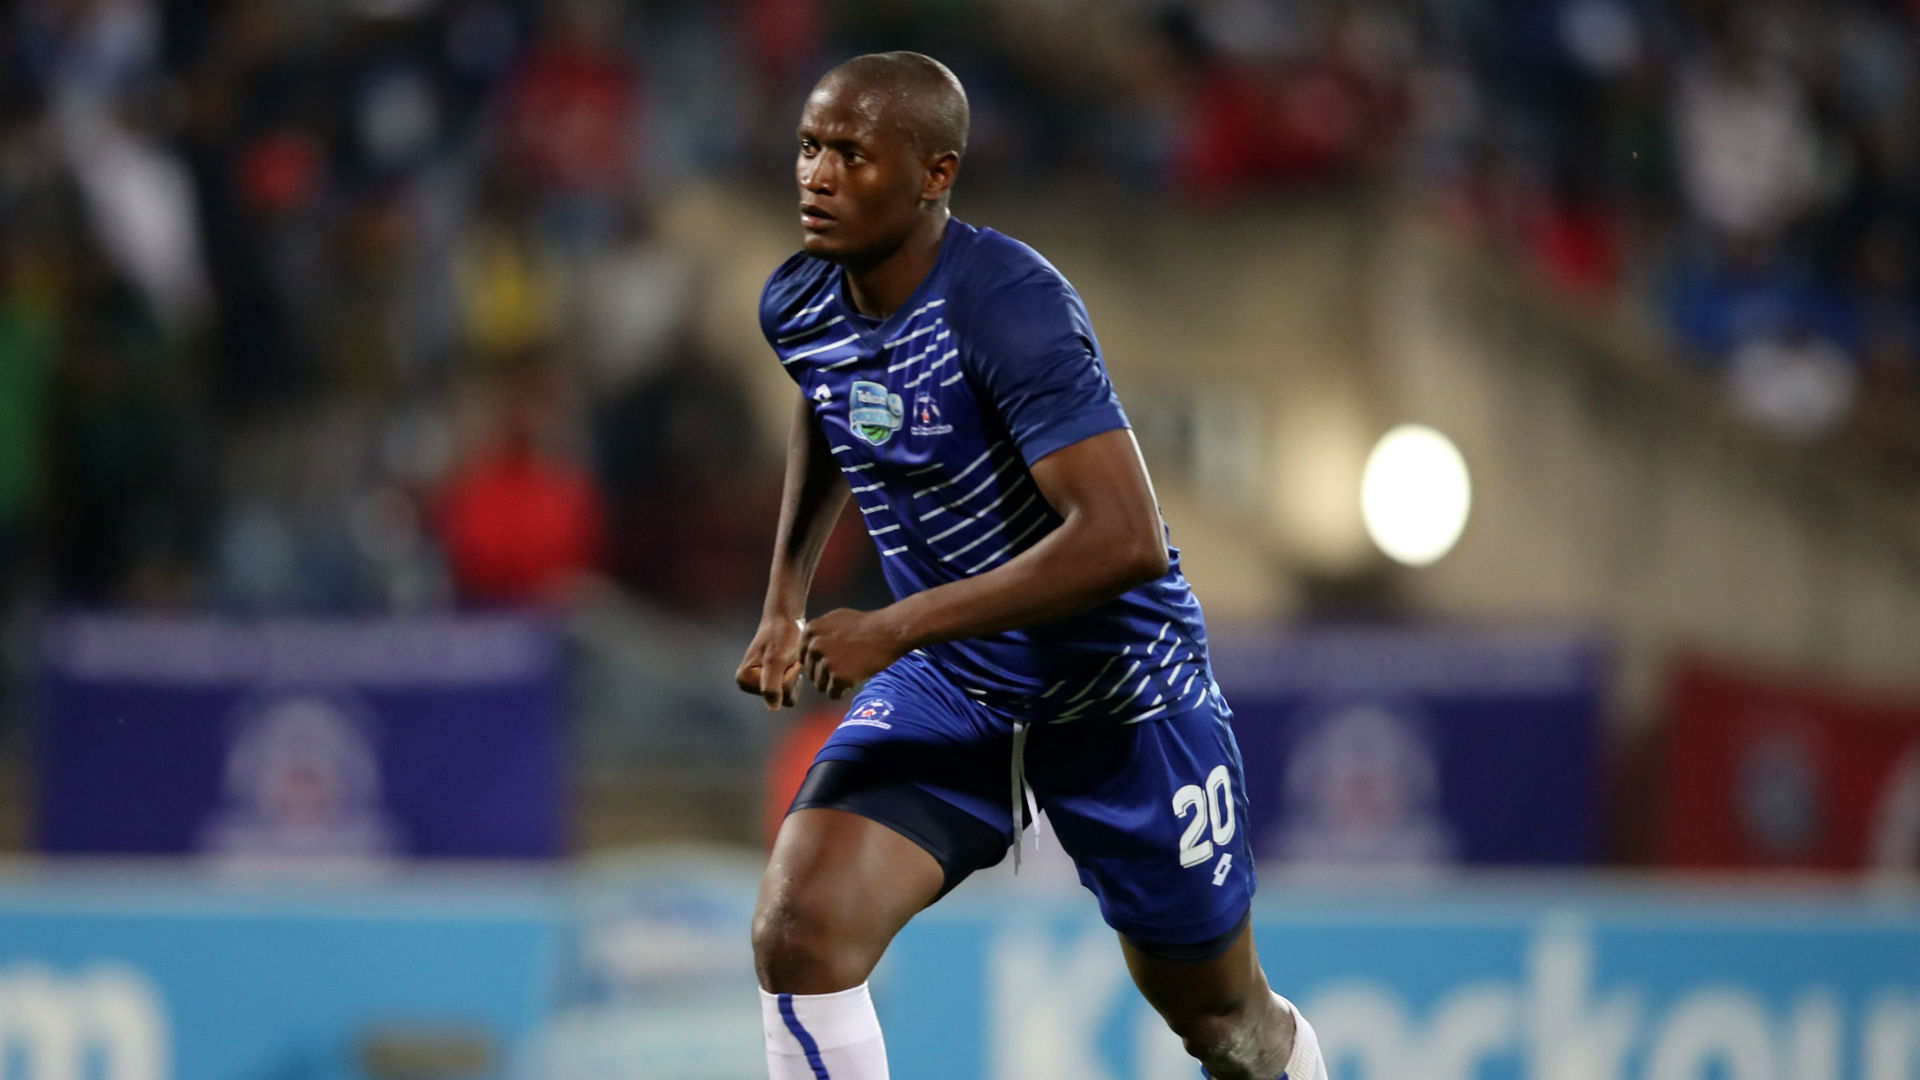 PSL fans debate Moseamedi's offside goal as Mamelodi Sundowns lift Telkom Knockout Cup